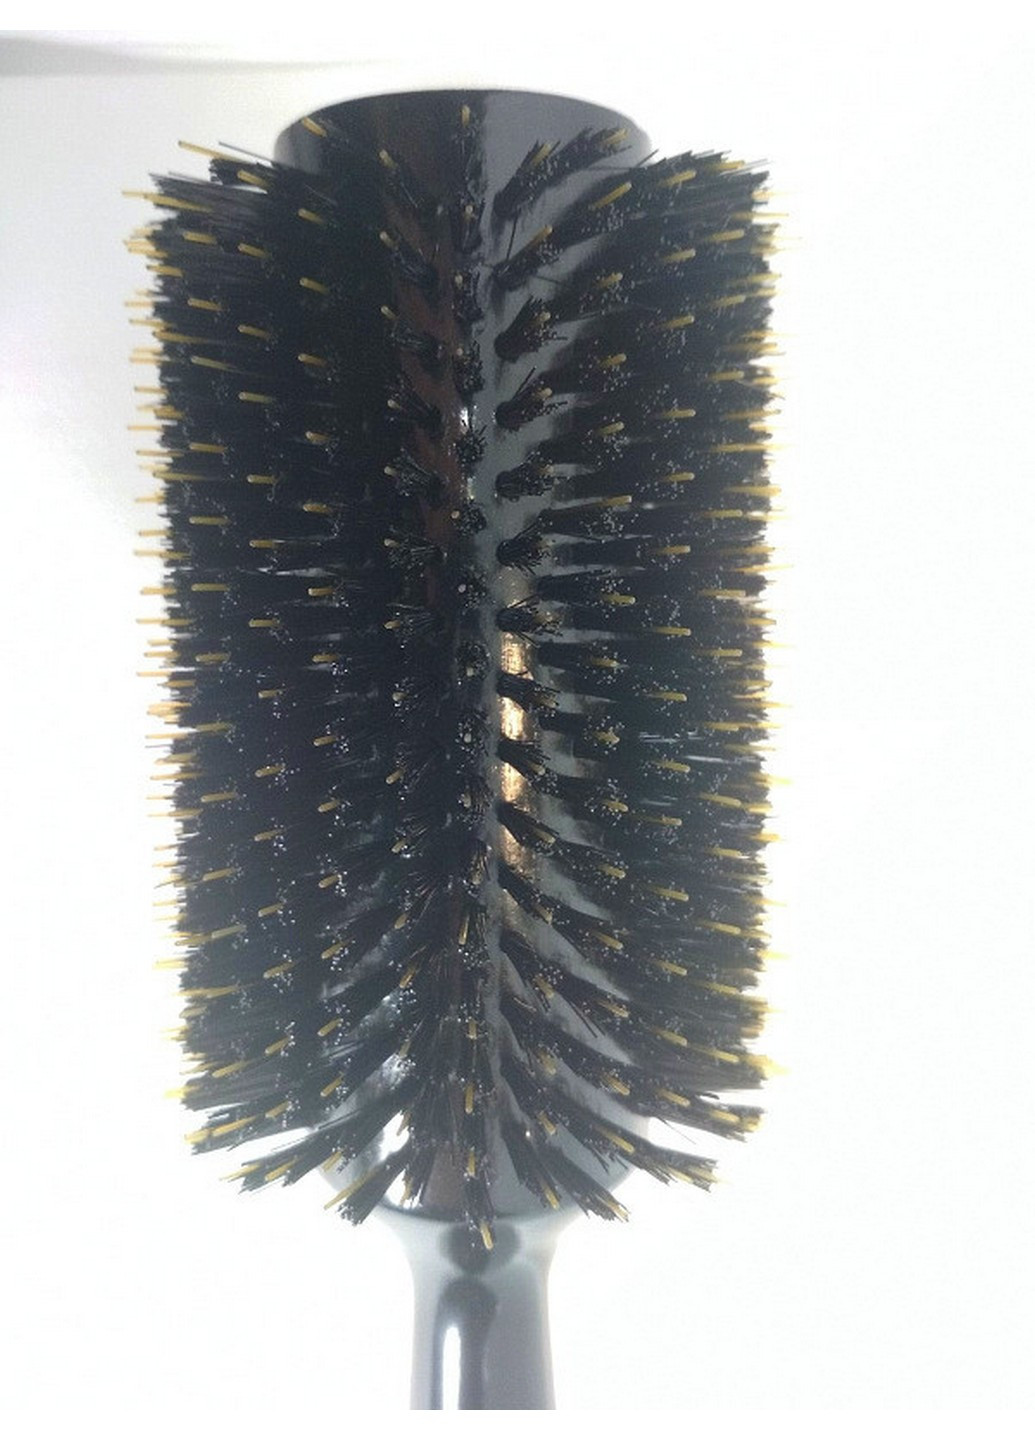 Дерев'яна щітка-брашинг для волосся кругла в коробці 43Ф Salon (254844066)